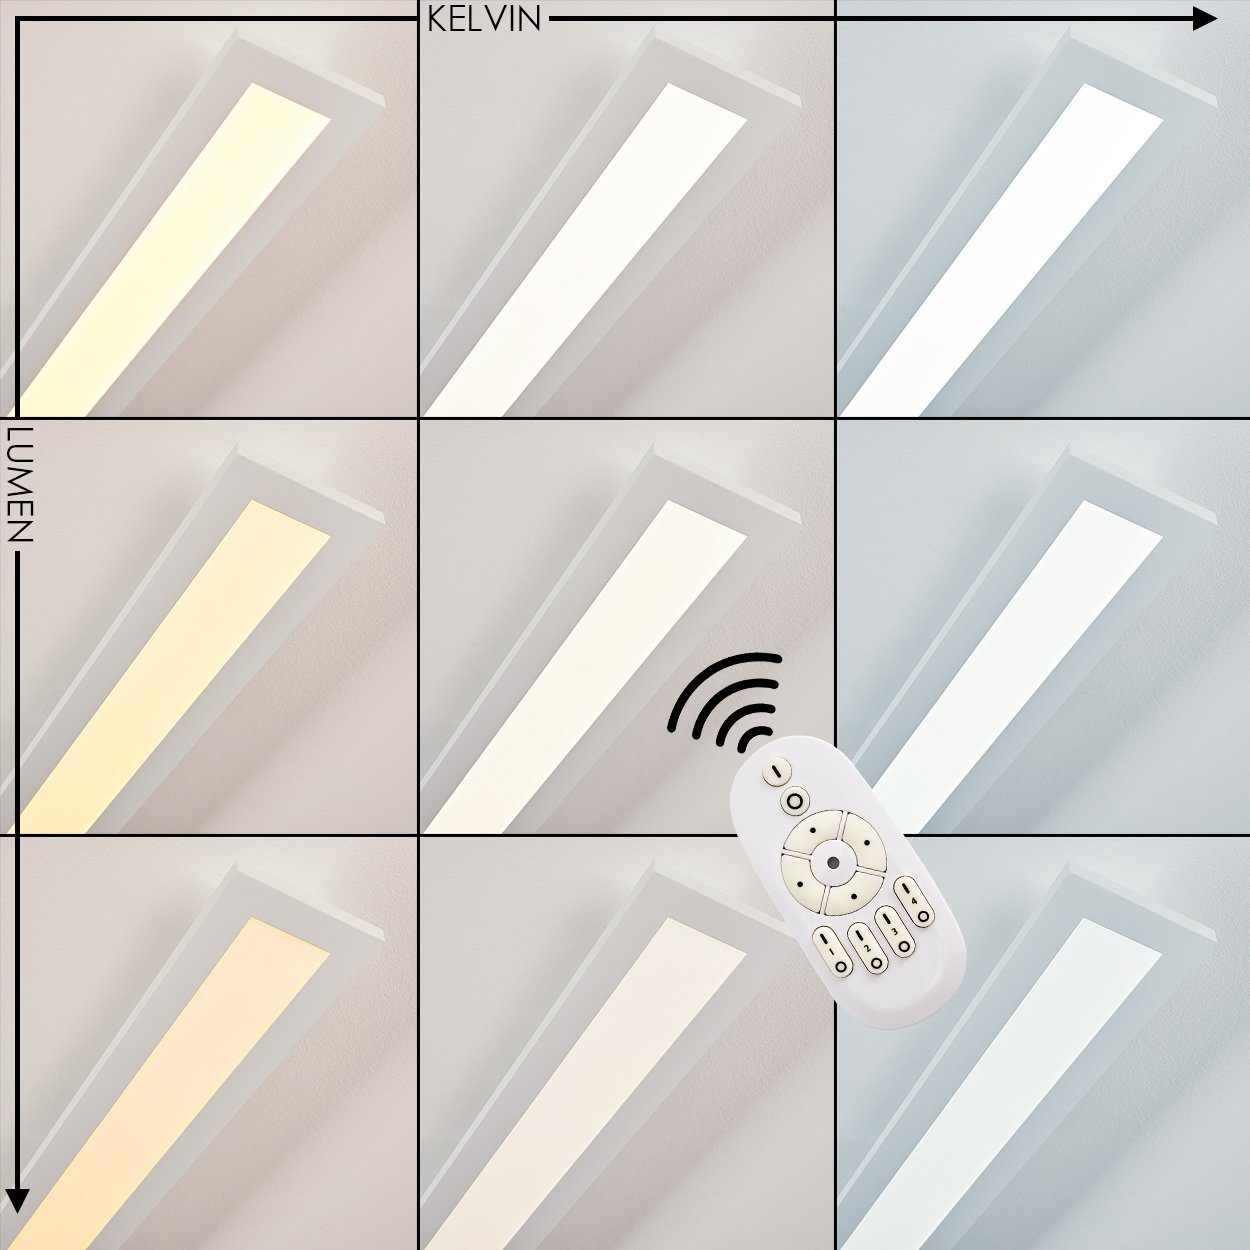 2700-5000 Deckenpanel 1680 21, in hofstein Kelvin, LED mit Metall Lumen dimmbare Panel Fernbedienung, Weiß, »Lonigo« max. 5 aus Deckenlampe Watt, CCT